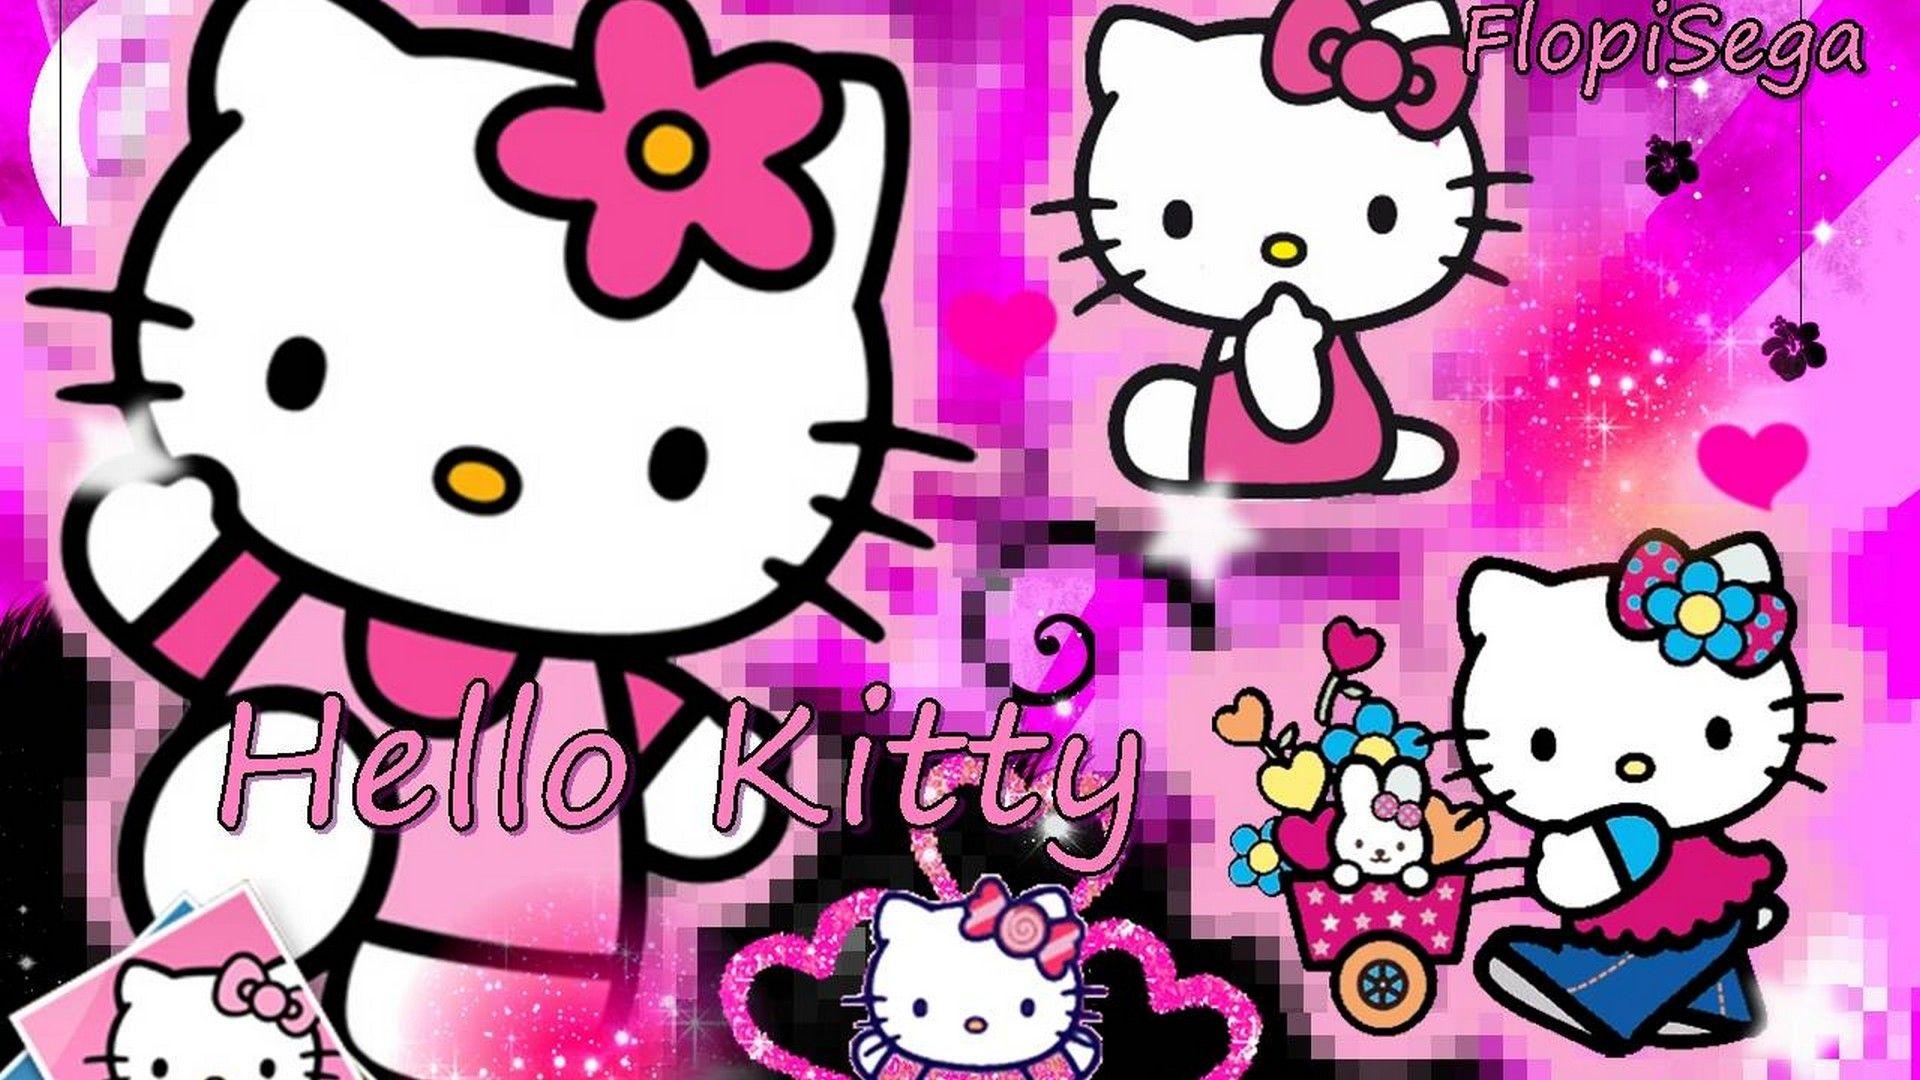 Hello Kitty Image Wallpaper For Desktop. Best HD